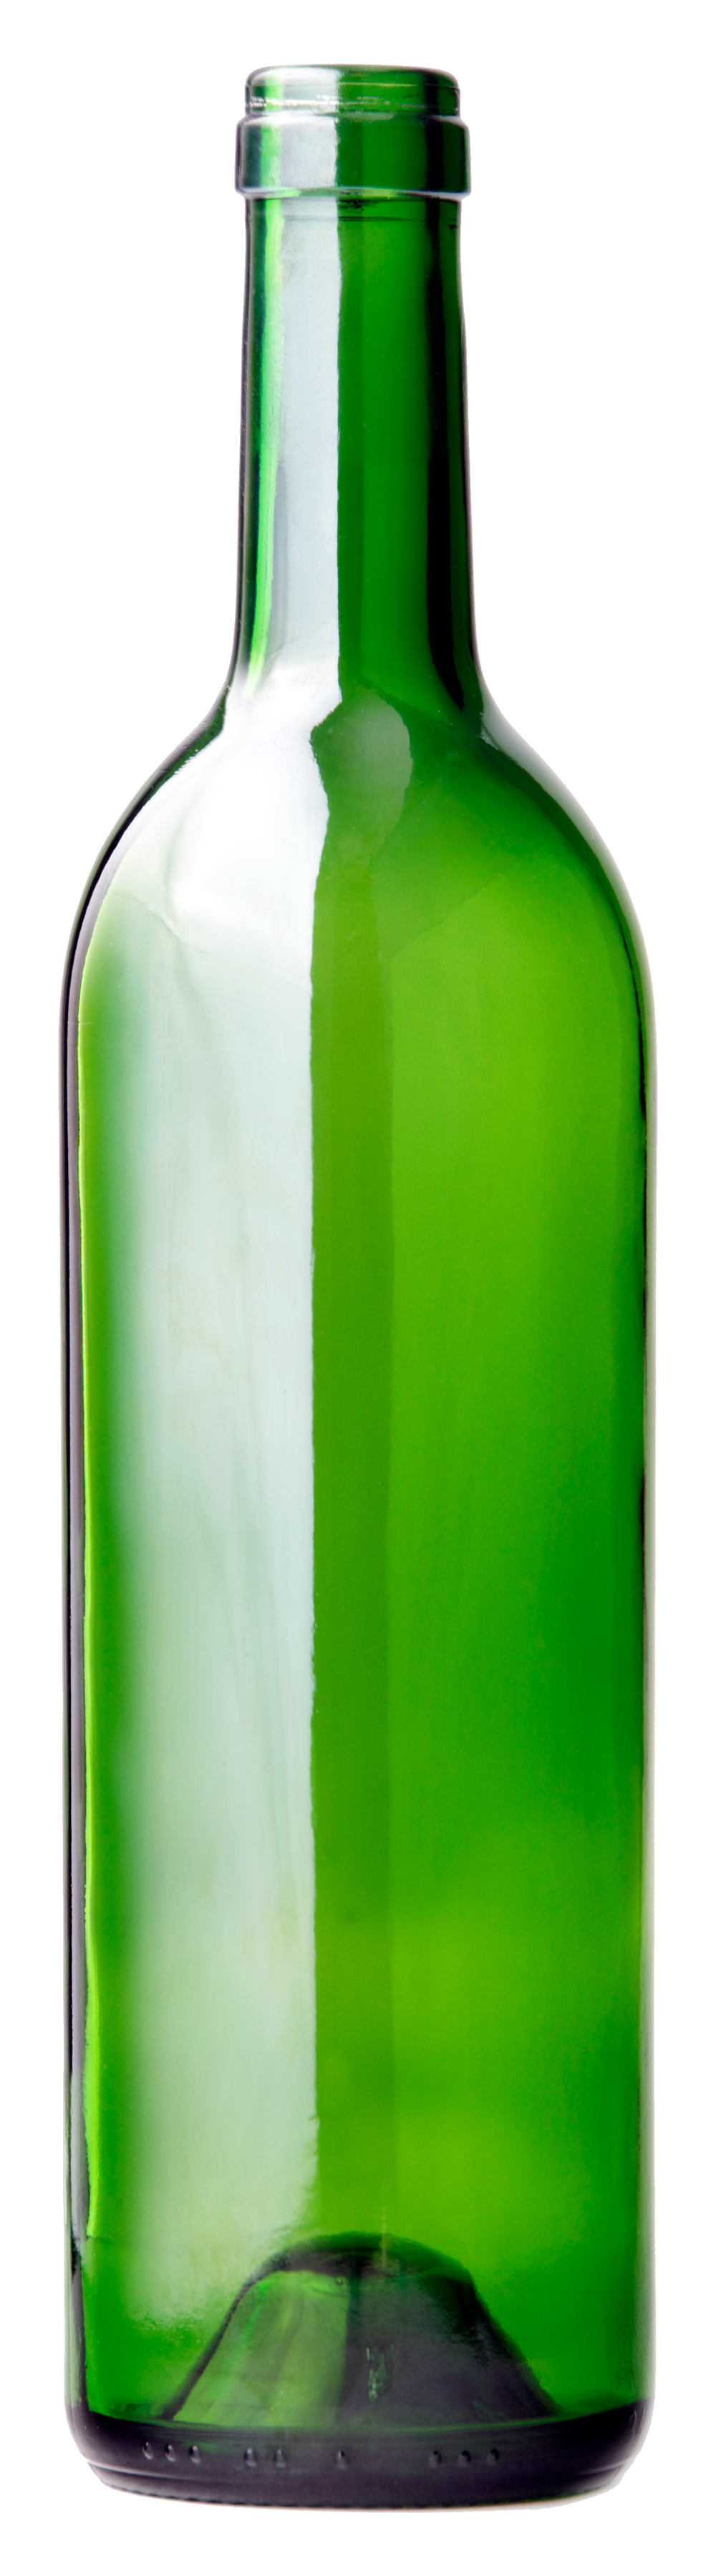 Green Bottle PNG Image